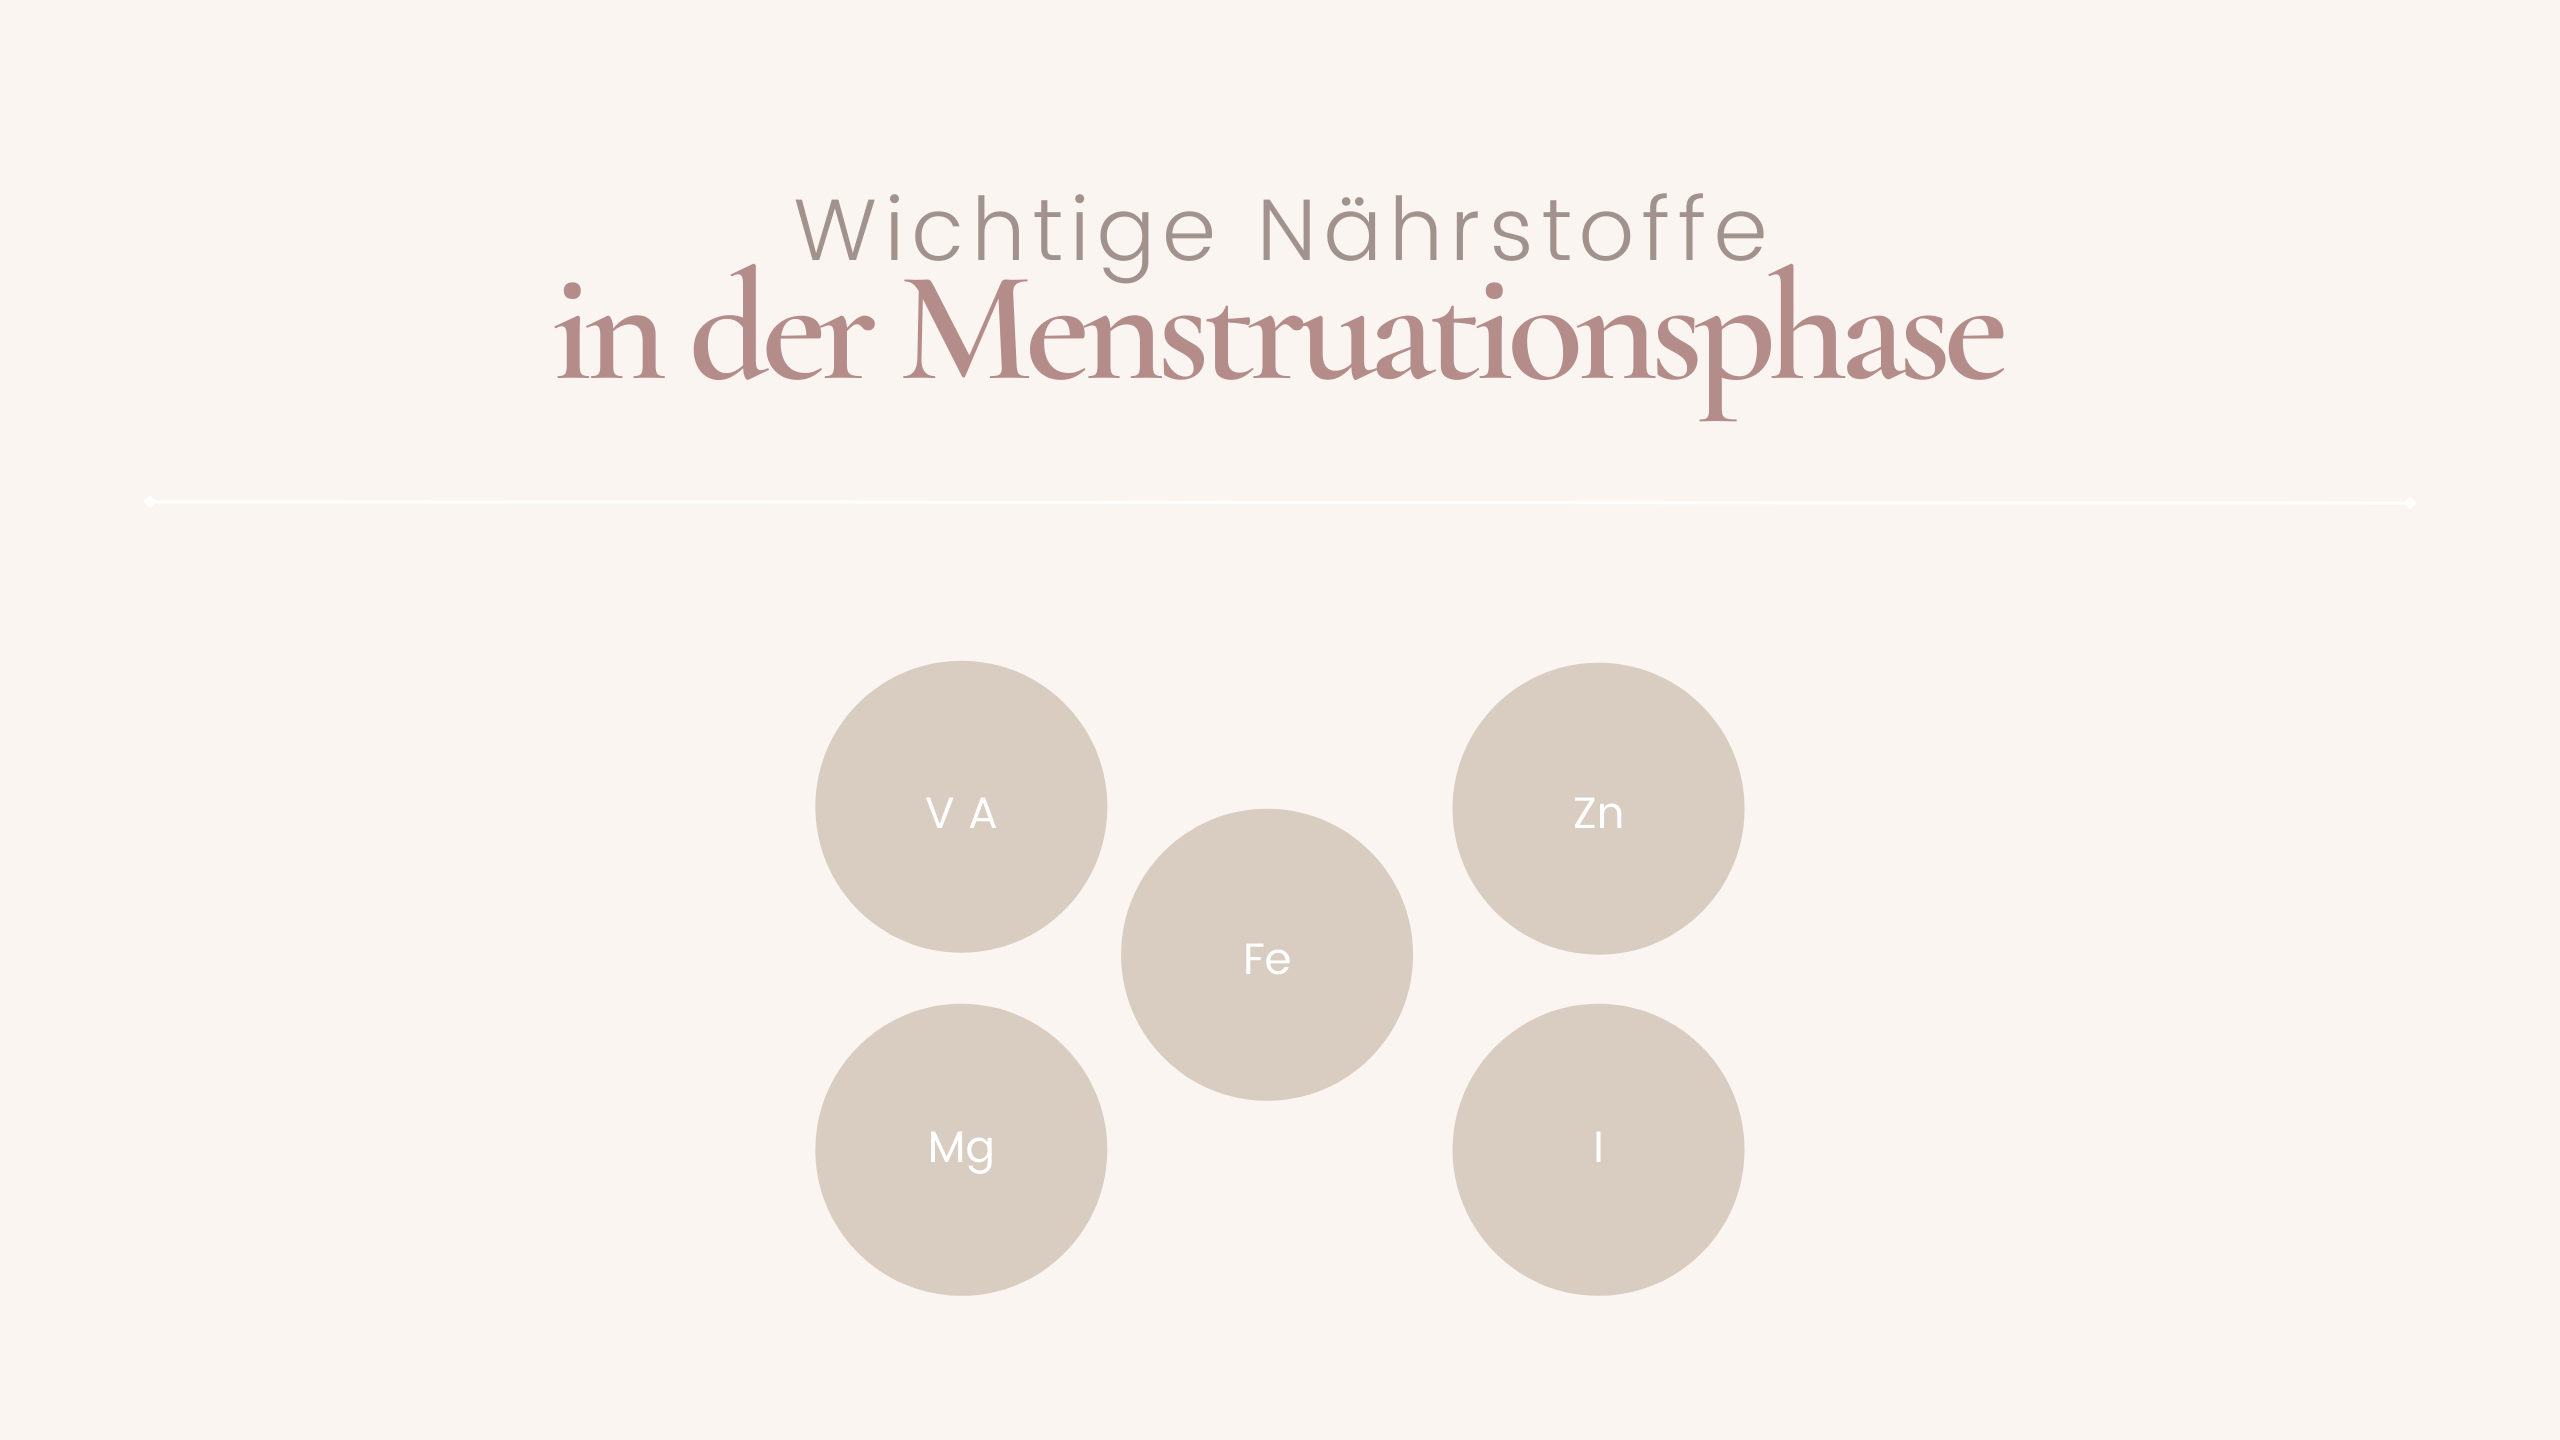 Wichtige Nährstoffe in der Menstruationsphase